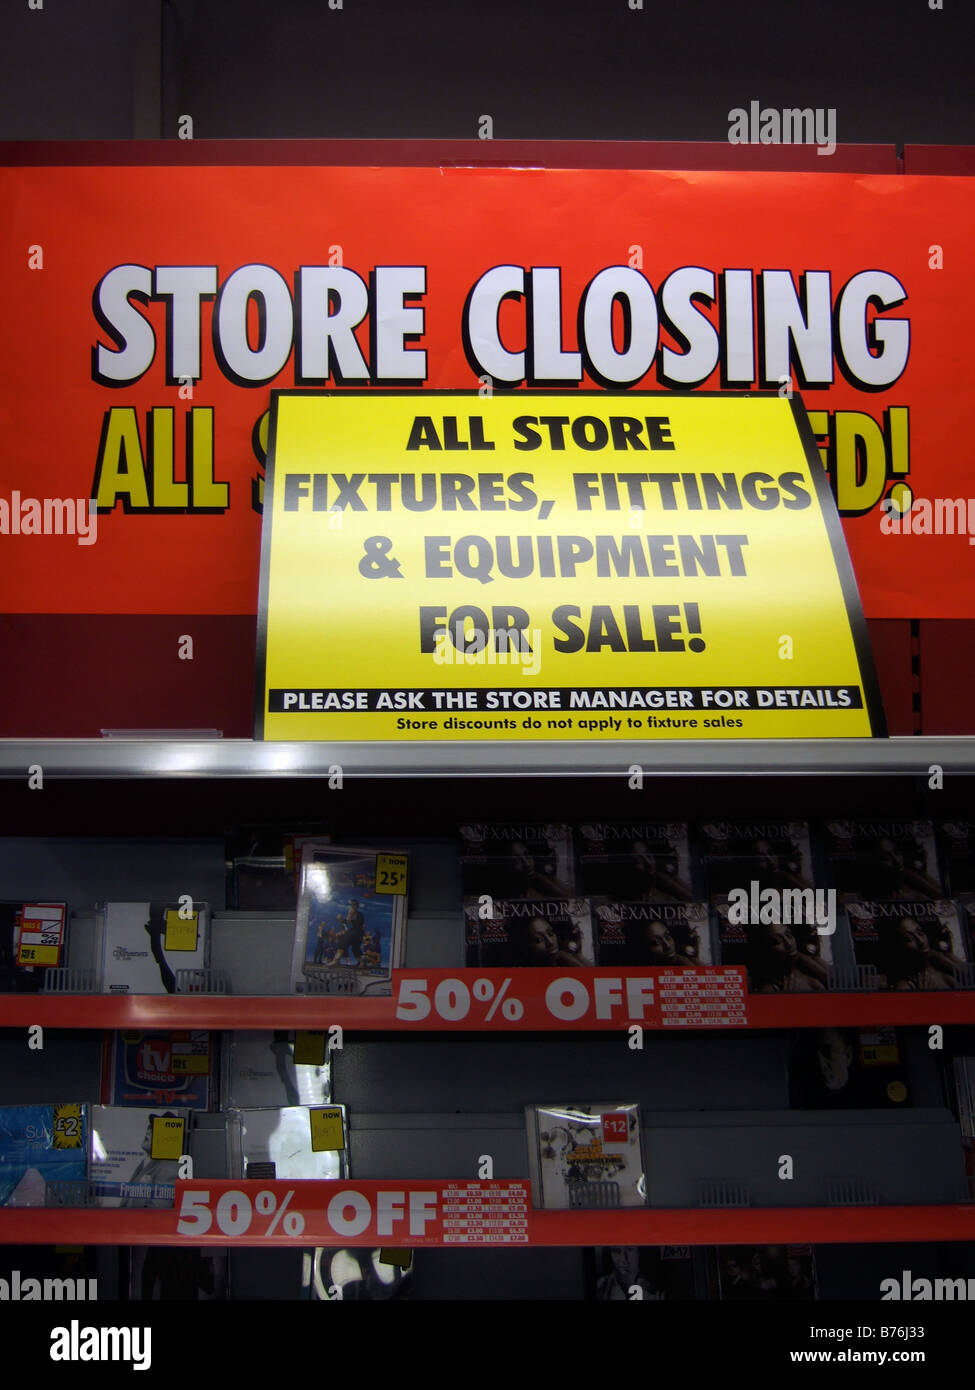 La fermeture du magasin / Fixtures & raccords pour la vente - les signes d'une fermeture du magasin de vente en raison de la liquidation. (Woolworths) Banque D'Images